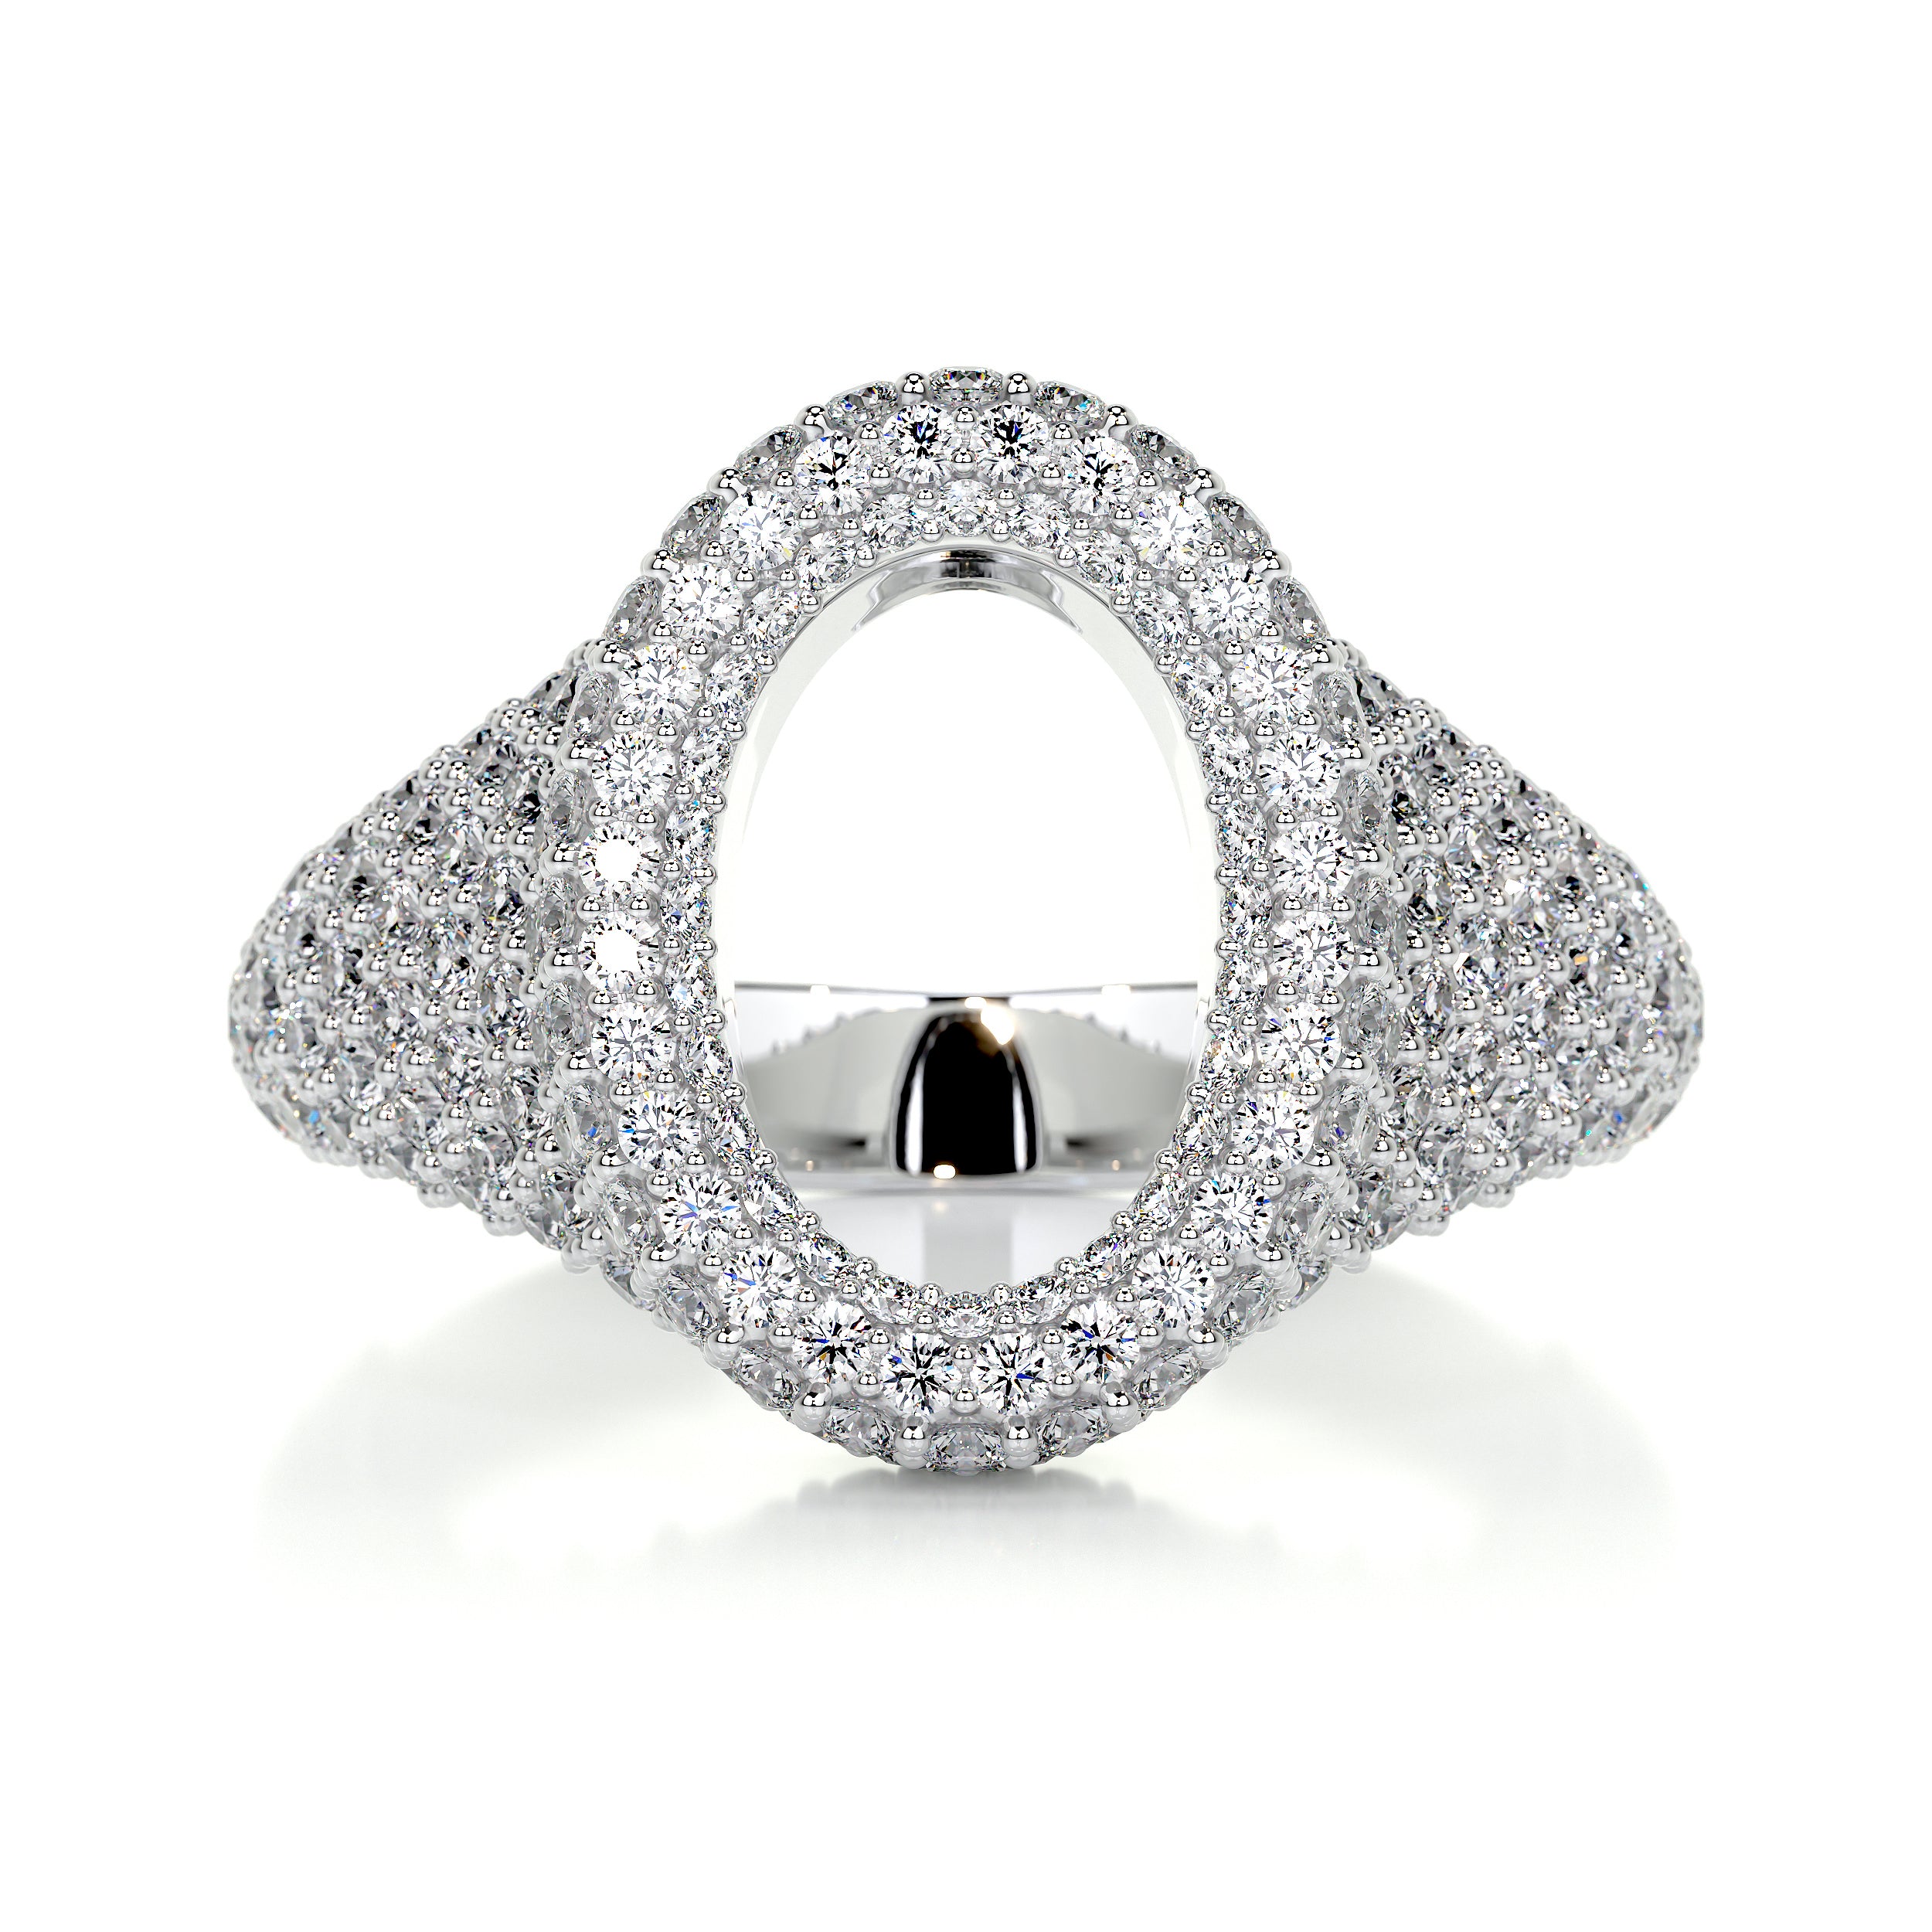 Angelina Wedding Ring   (1.4 Carat) -14K White Gold